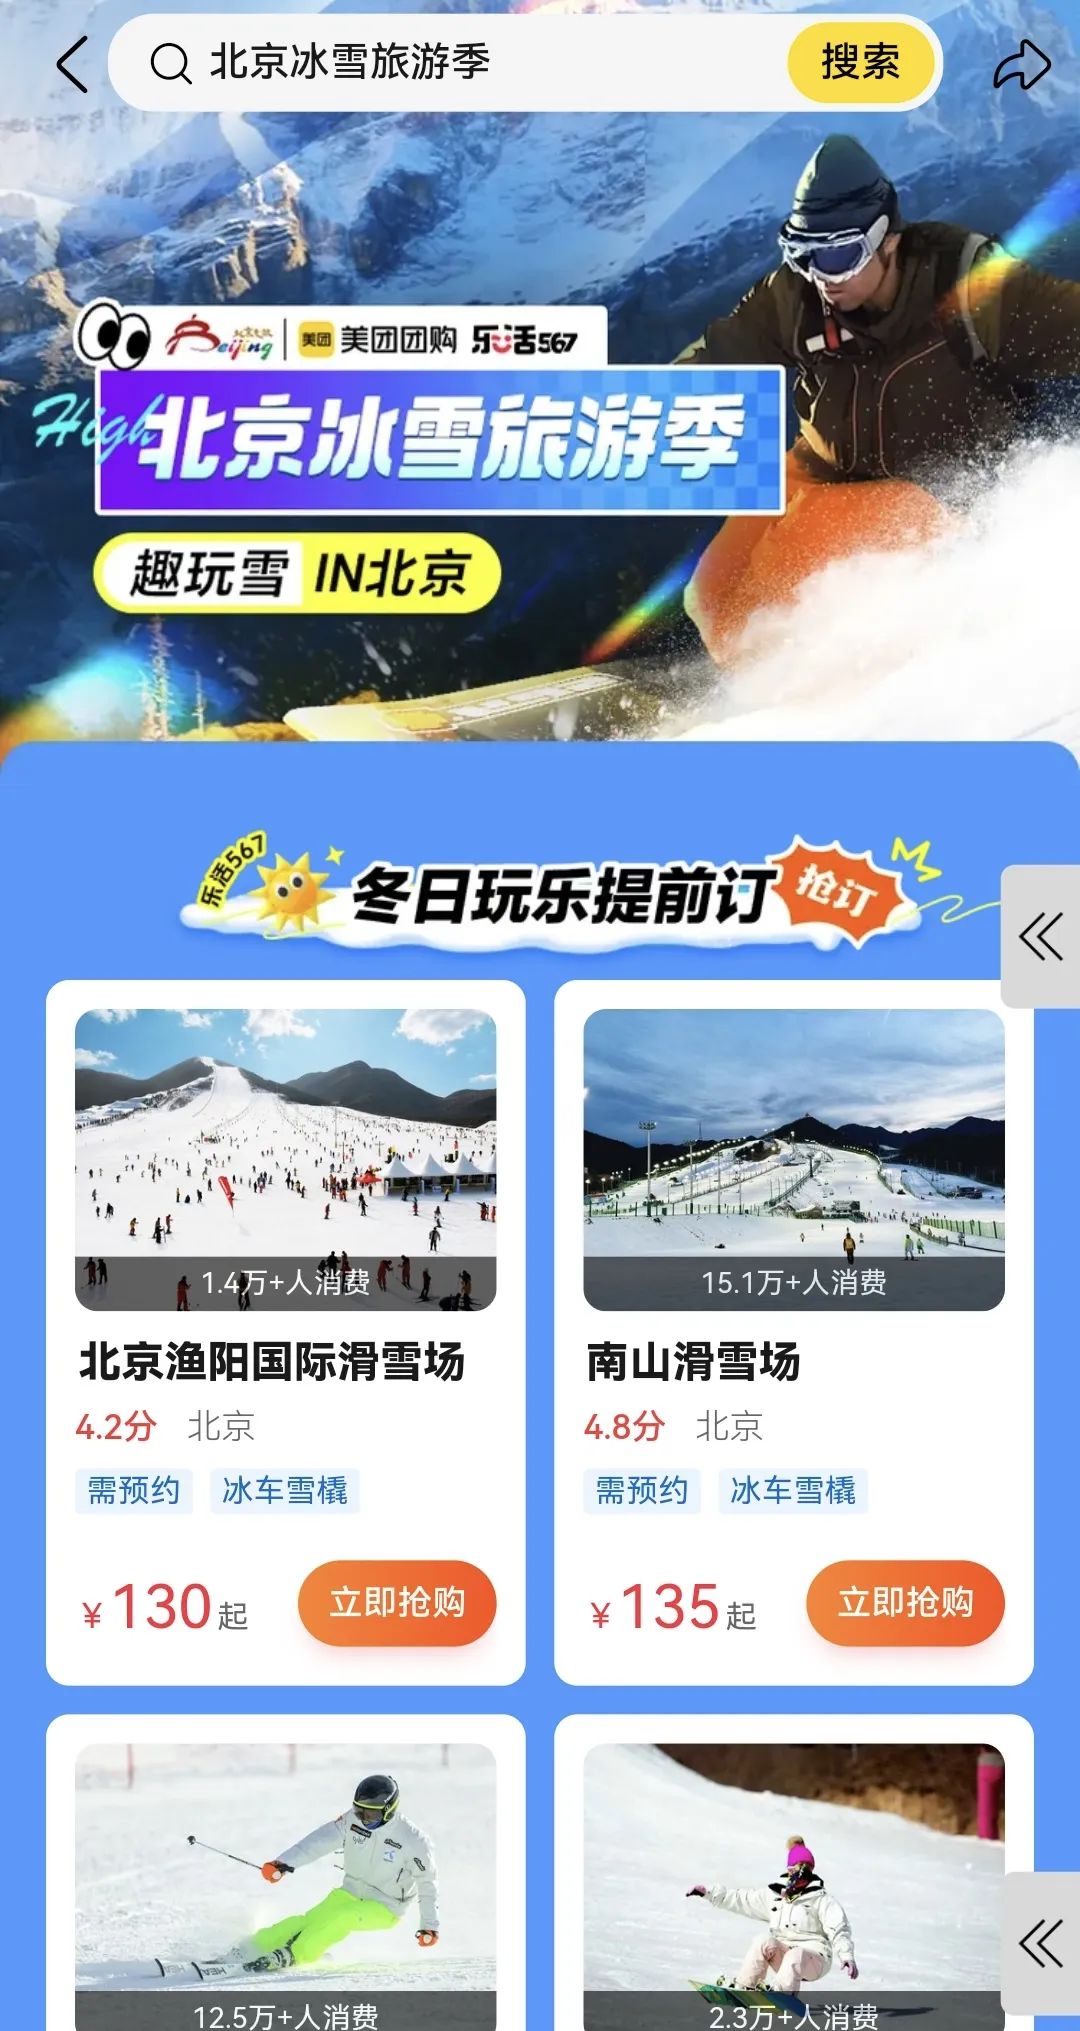 “龙墩墩”邀请全国“小可爱”来北京体验 “北京冰雪旅游季”